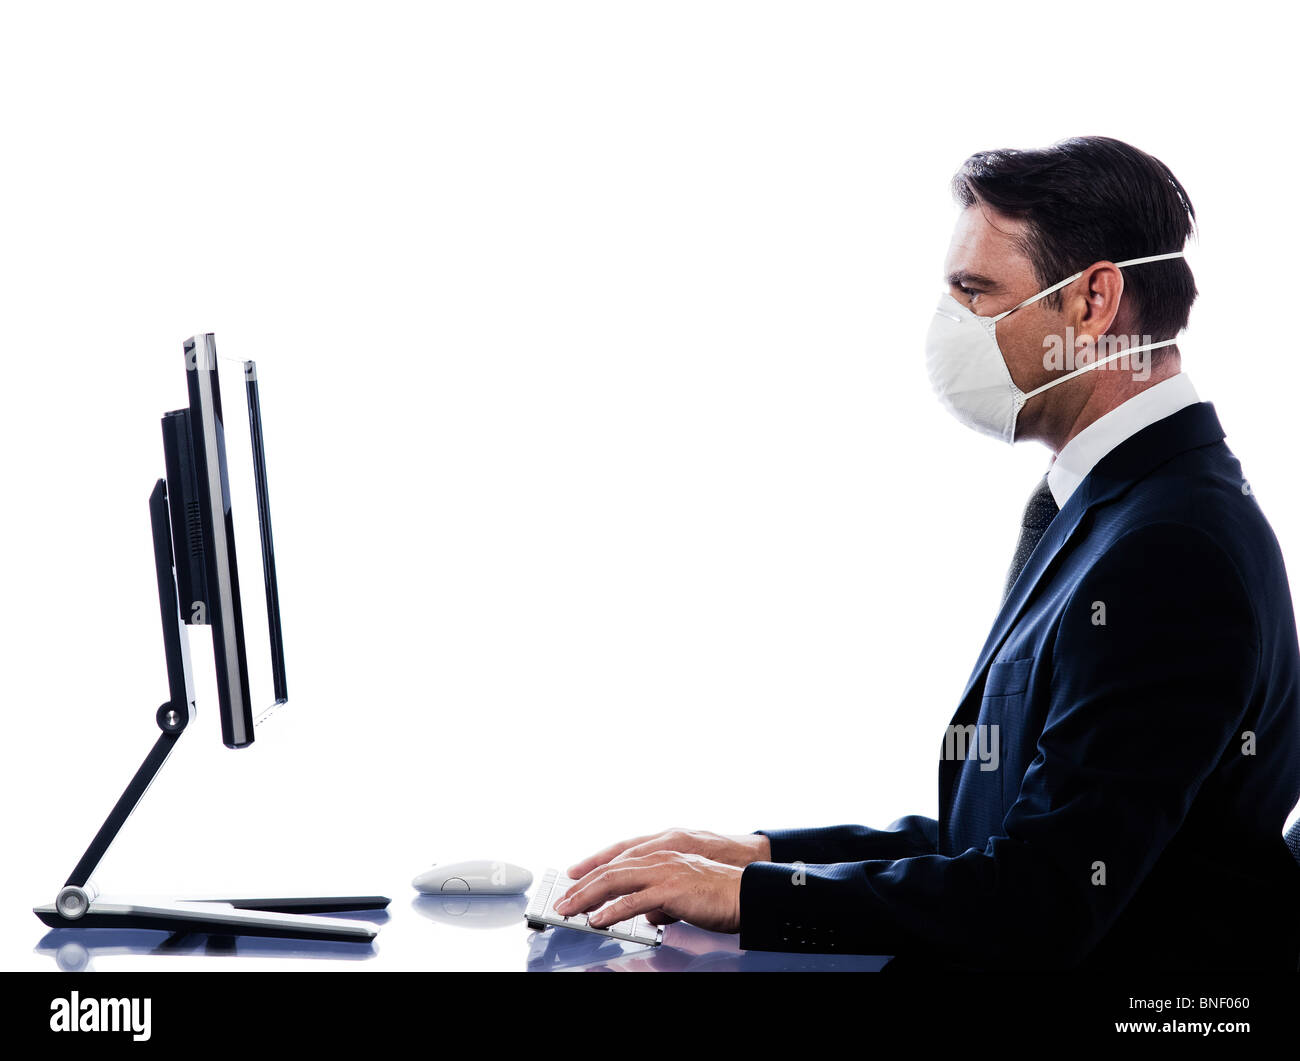 Caucasian man cumputing ordinateur portant masque de protection concept studio isolé sur fond blanc Banque D'Images